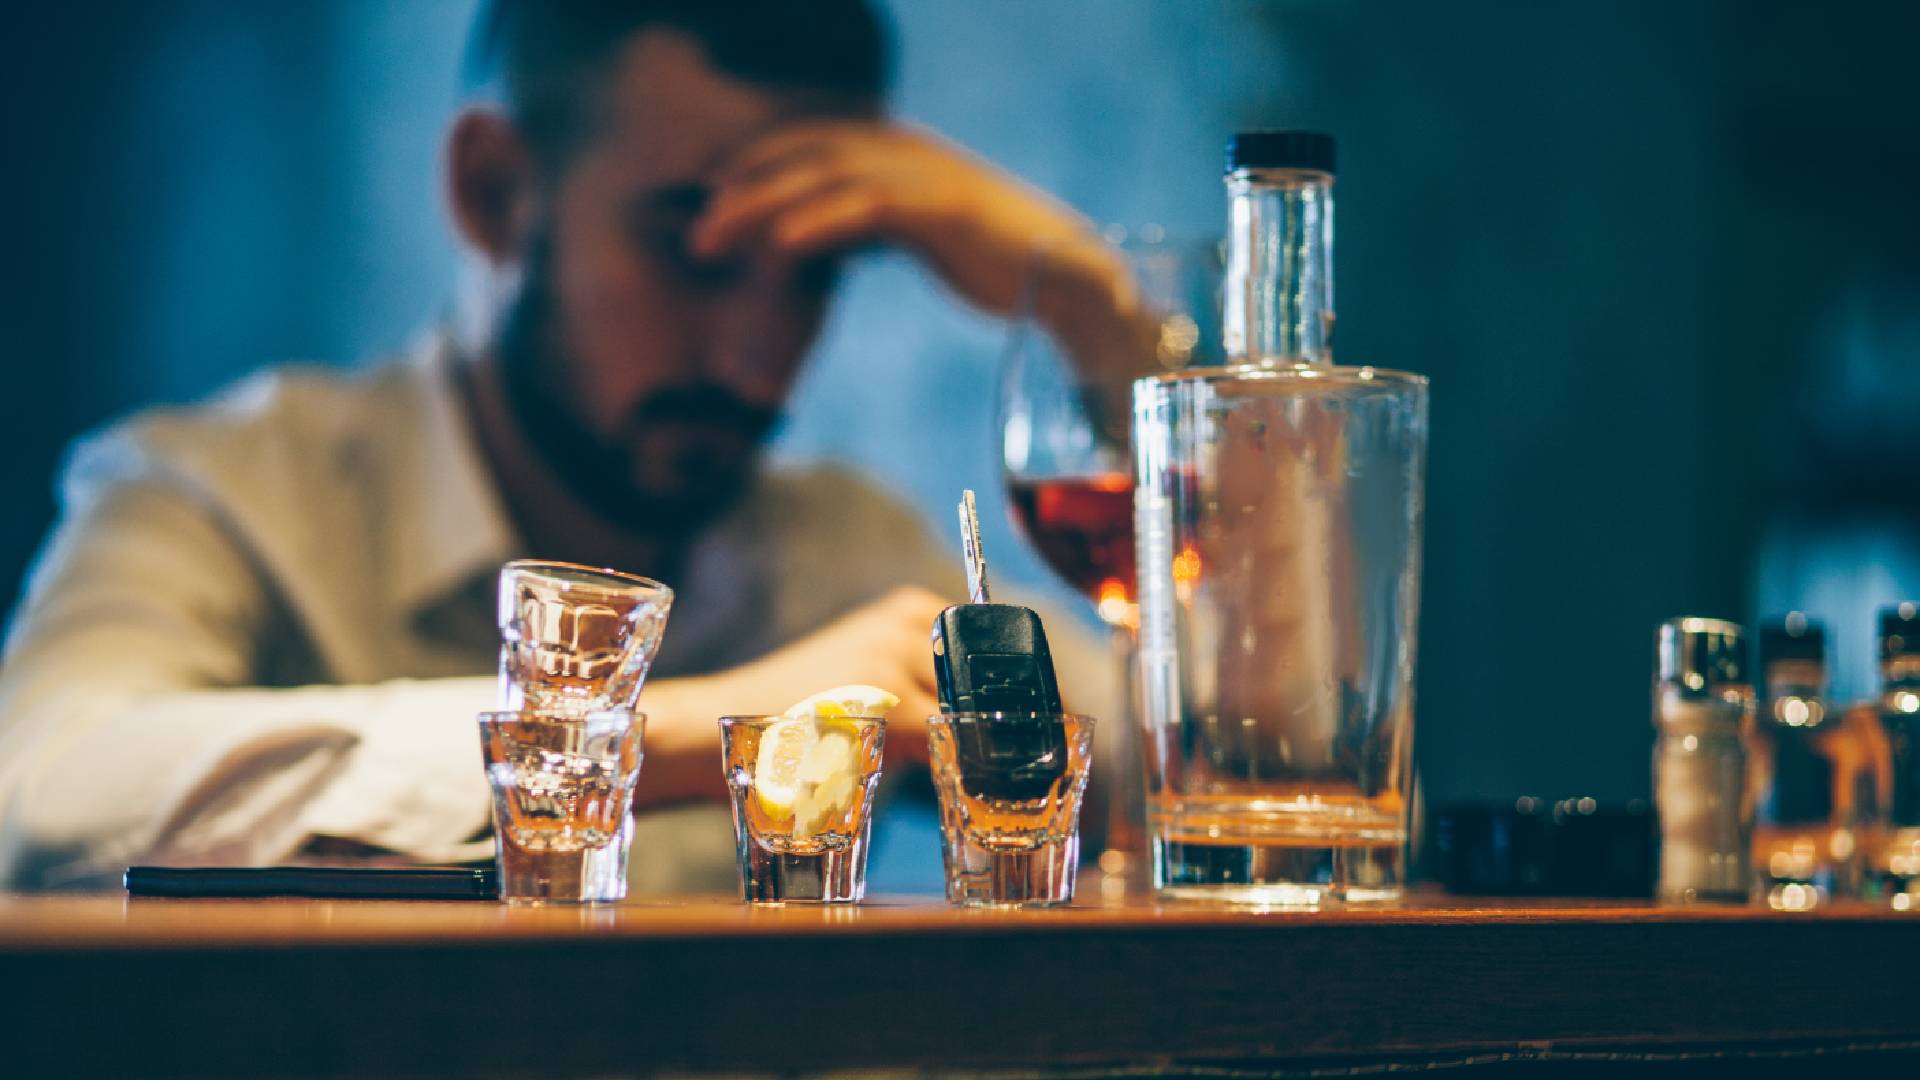 Hyperventilace může významně zvýšit rychlost, s jakou tělo odbourává alkohol